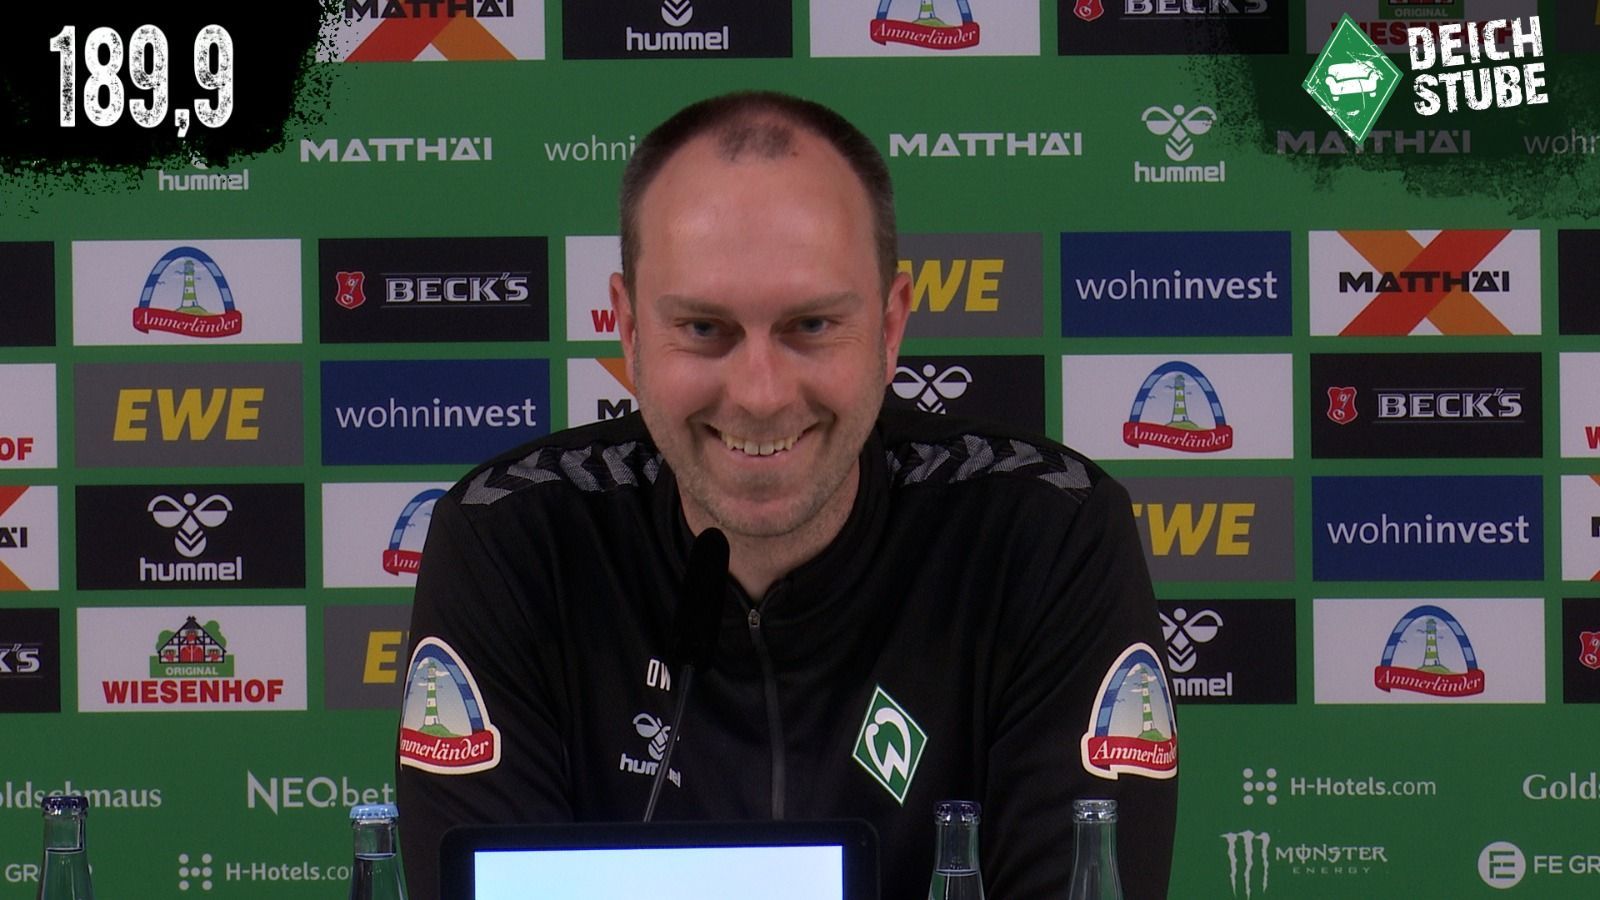 Vor Werder Bremen gegen RB Leipzig: Die Highlights der Werder-Pressekonferenz in 189,9 Sekunden!